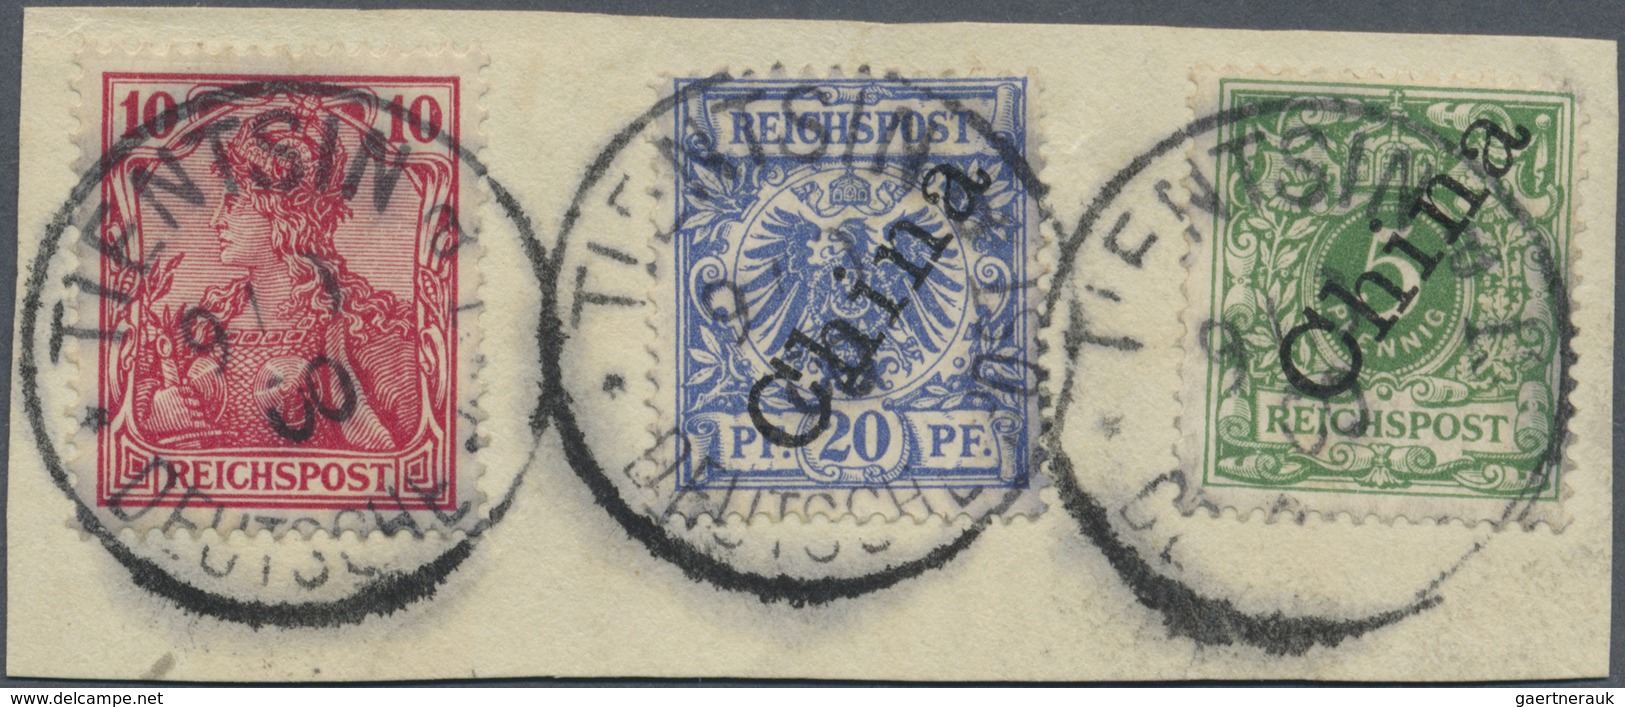 Brfst/O Deutsche Post In China - Mitläufer: 1900, 10 Pf. Germania Reichspost Ohne Aufdruck In Sehr Früher Ve - Deutsche Post In China